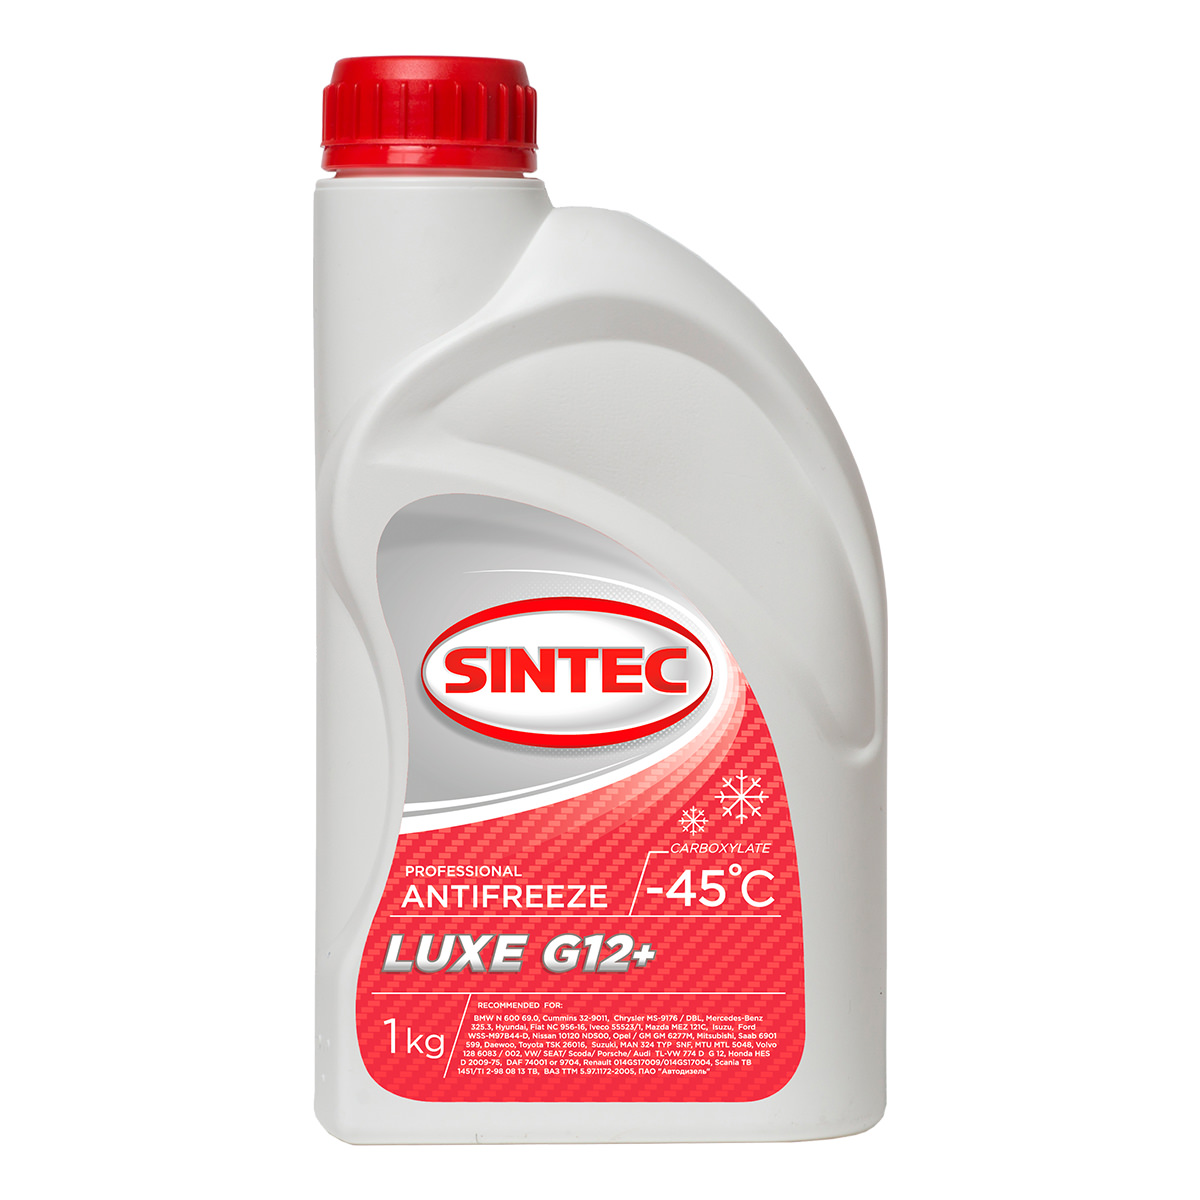 Антифриз Sintec Luxe G12+ -45°C красный готовый 1 кг